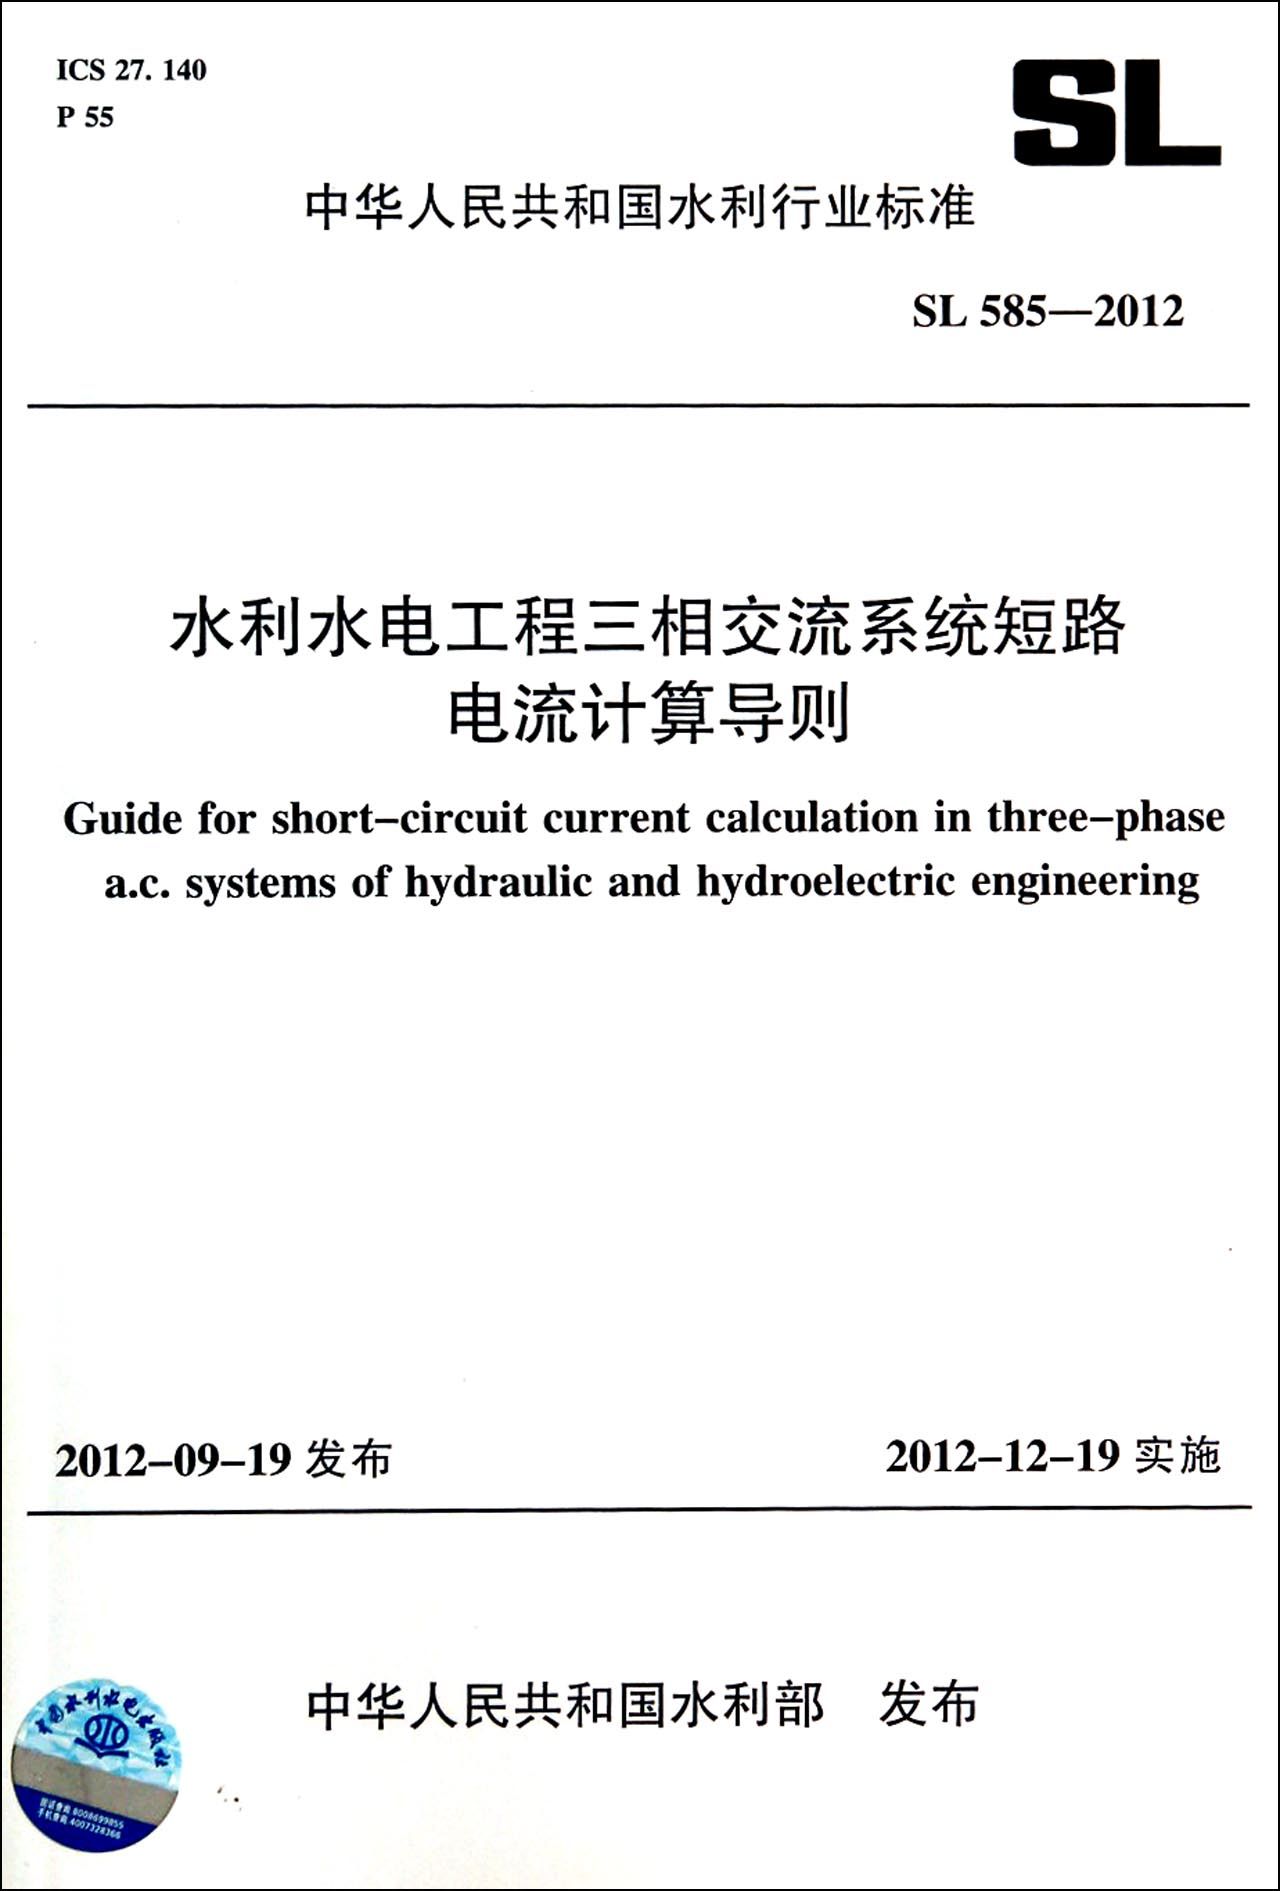 BK全新水利水电工程三相交流系统短路电流计算导则(SL585-2012)/中华人民共和国水利行业标准